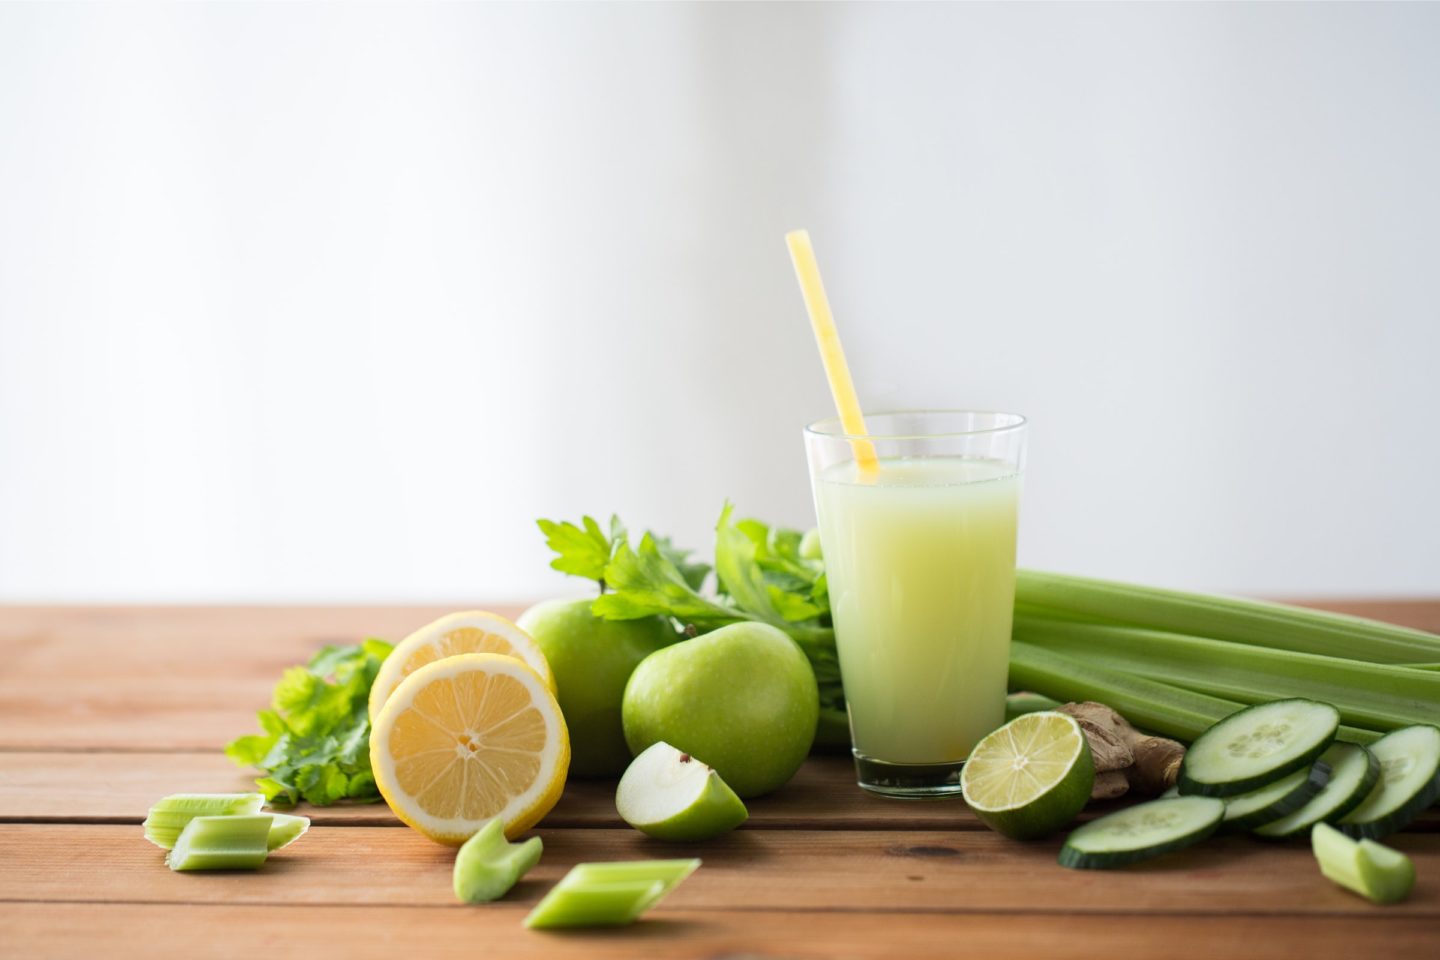 Cucumber Celery Juice